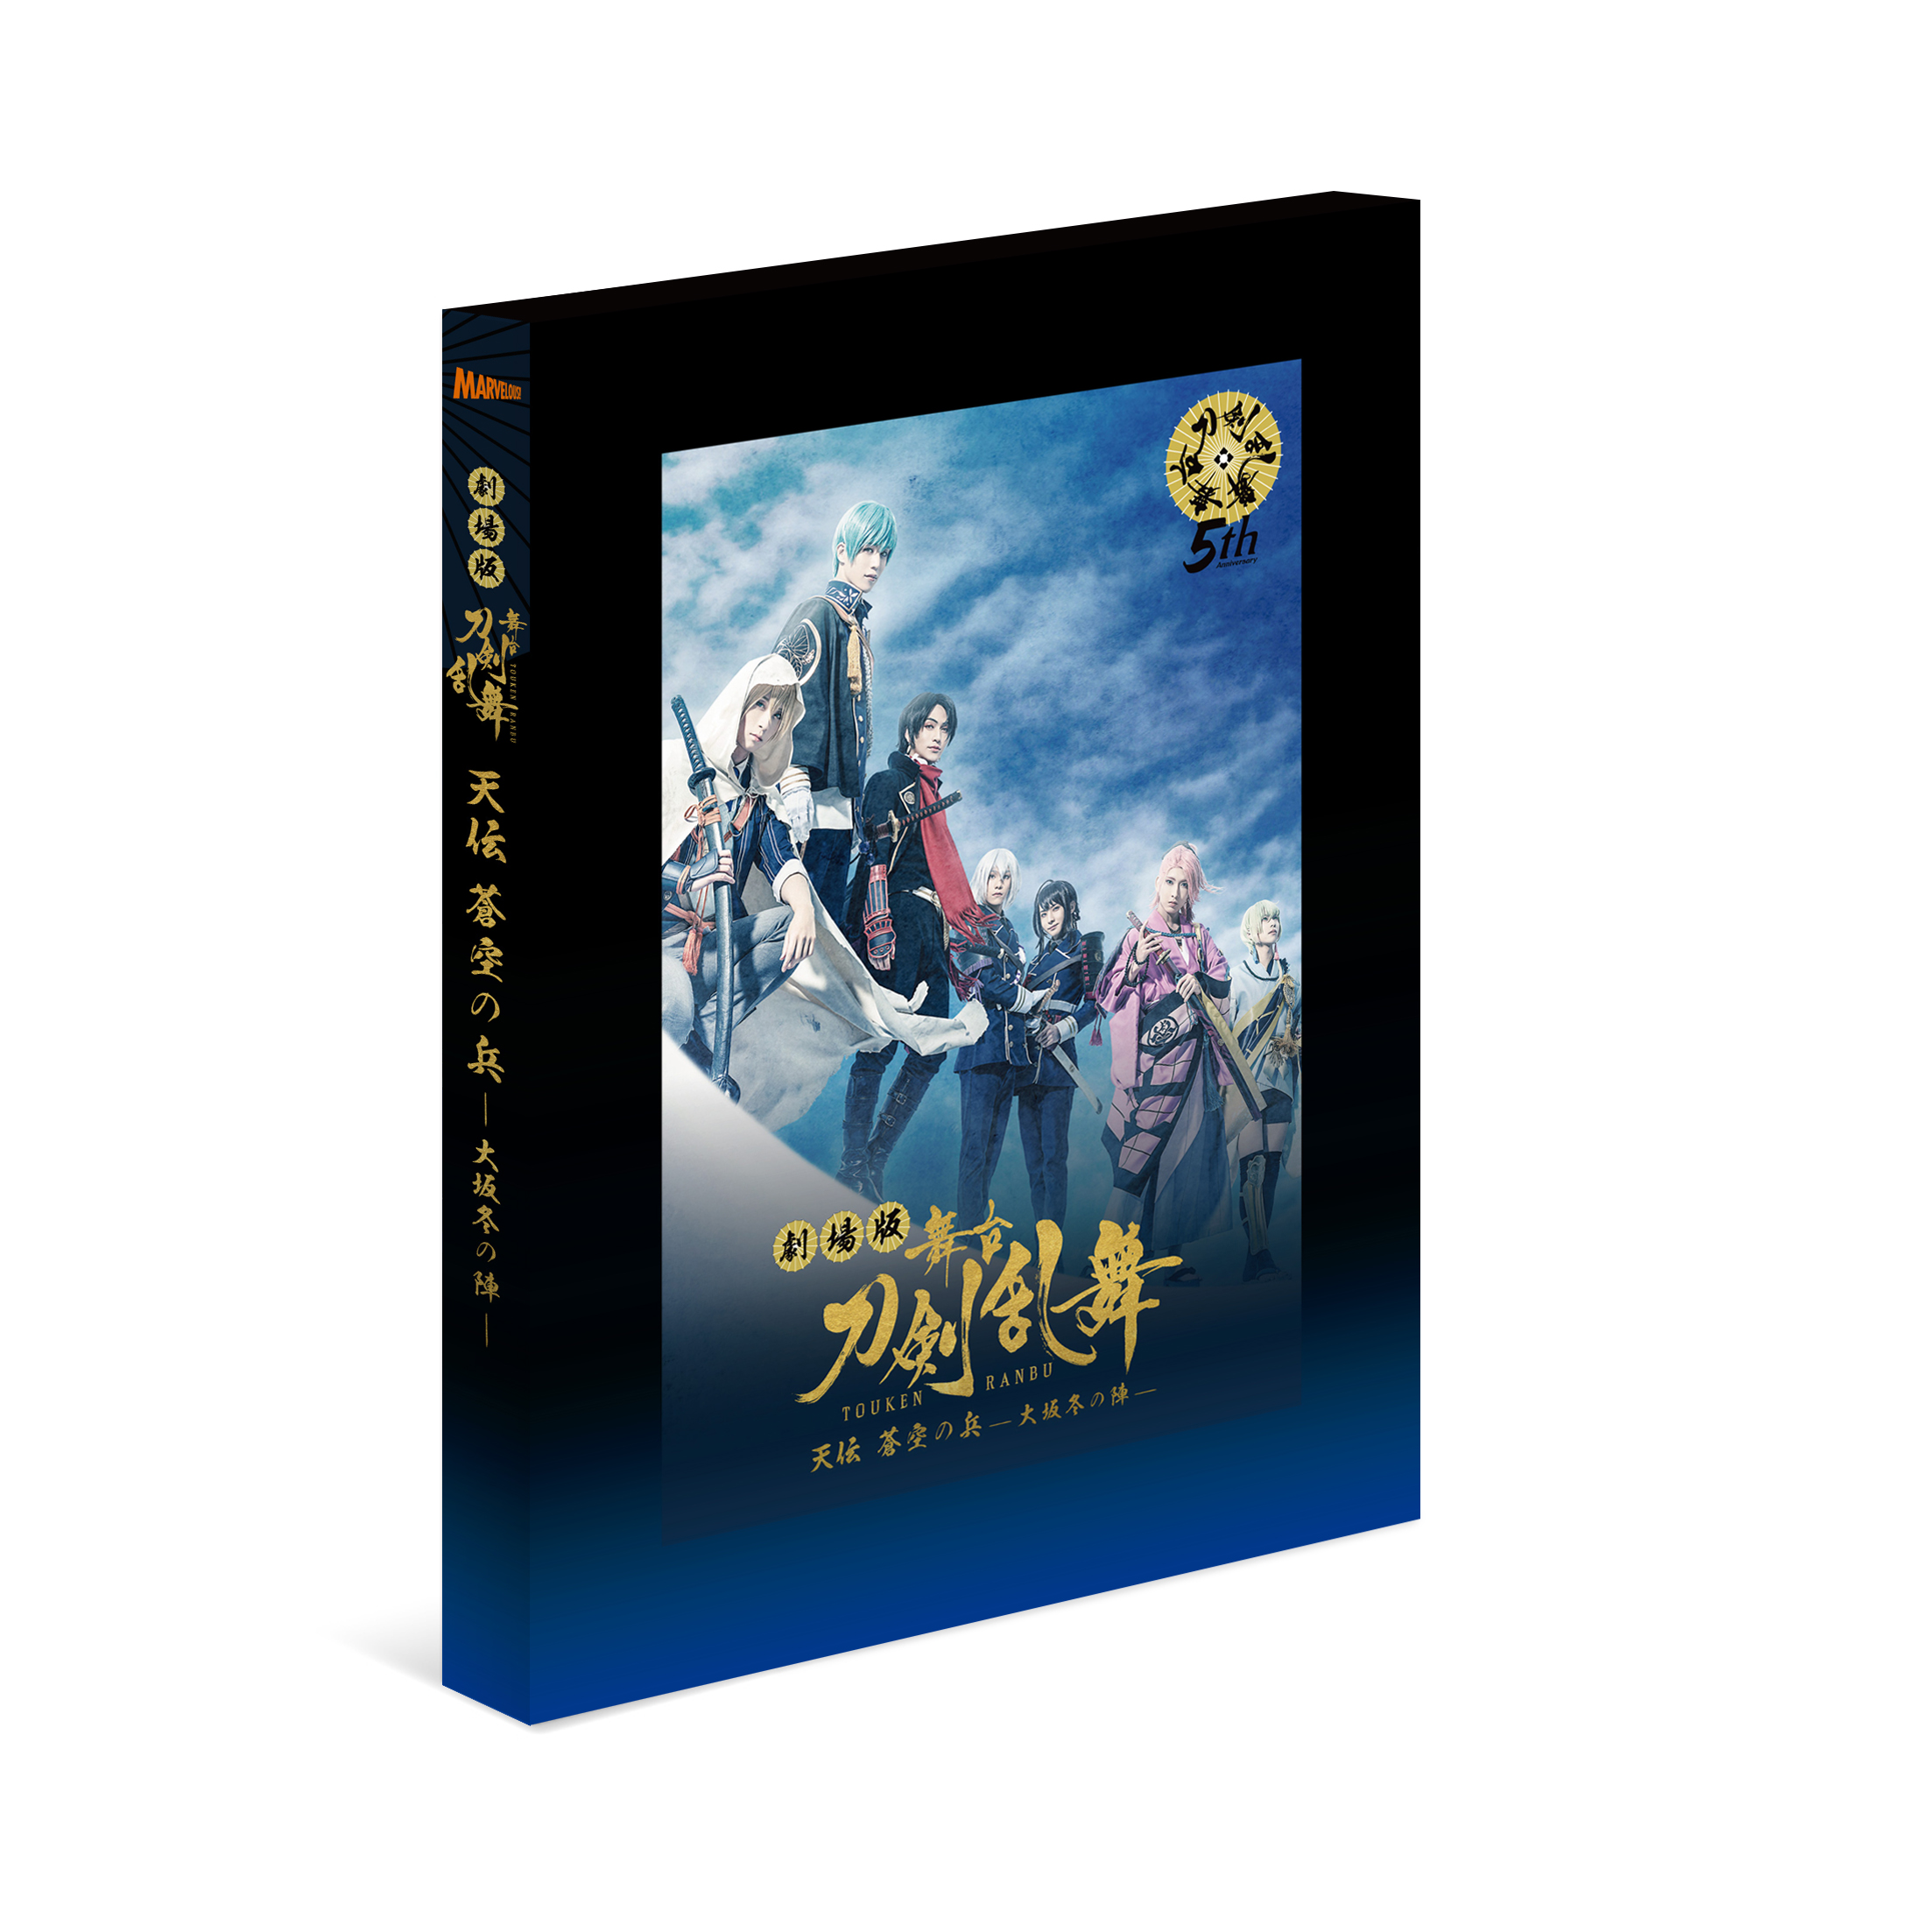 劇場版 舞台『刀剣乱舞』无伝 夕紅の士 -大坂夏の陣- Blu-ray/DVD 